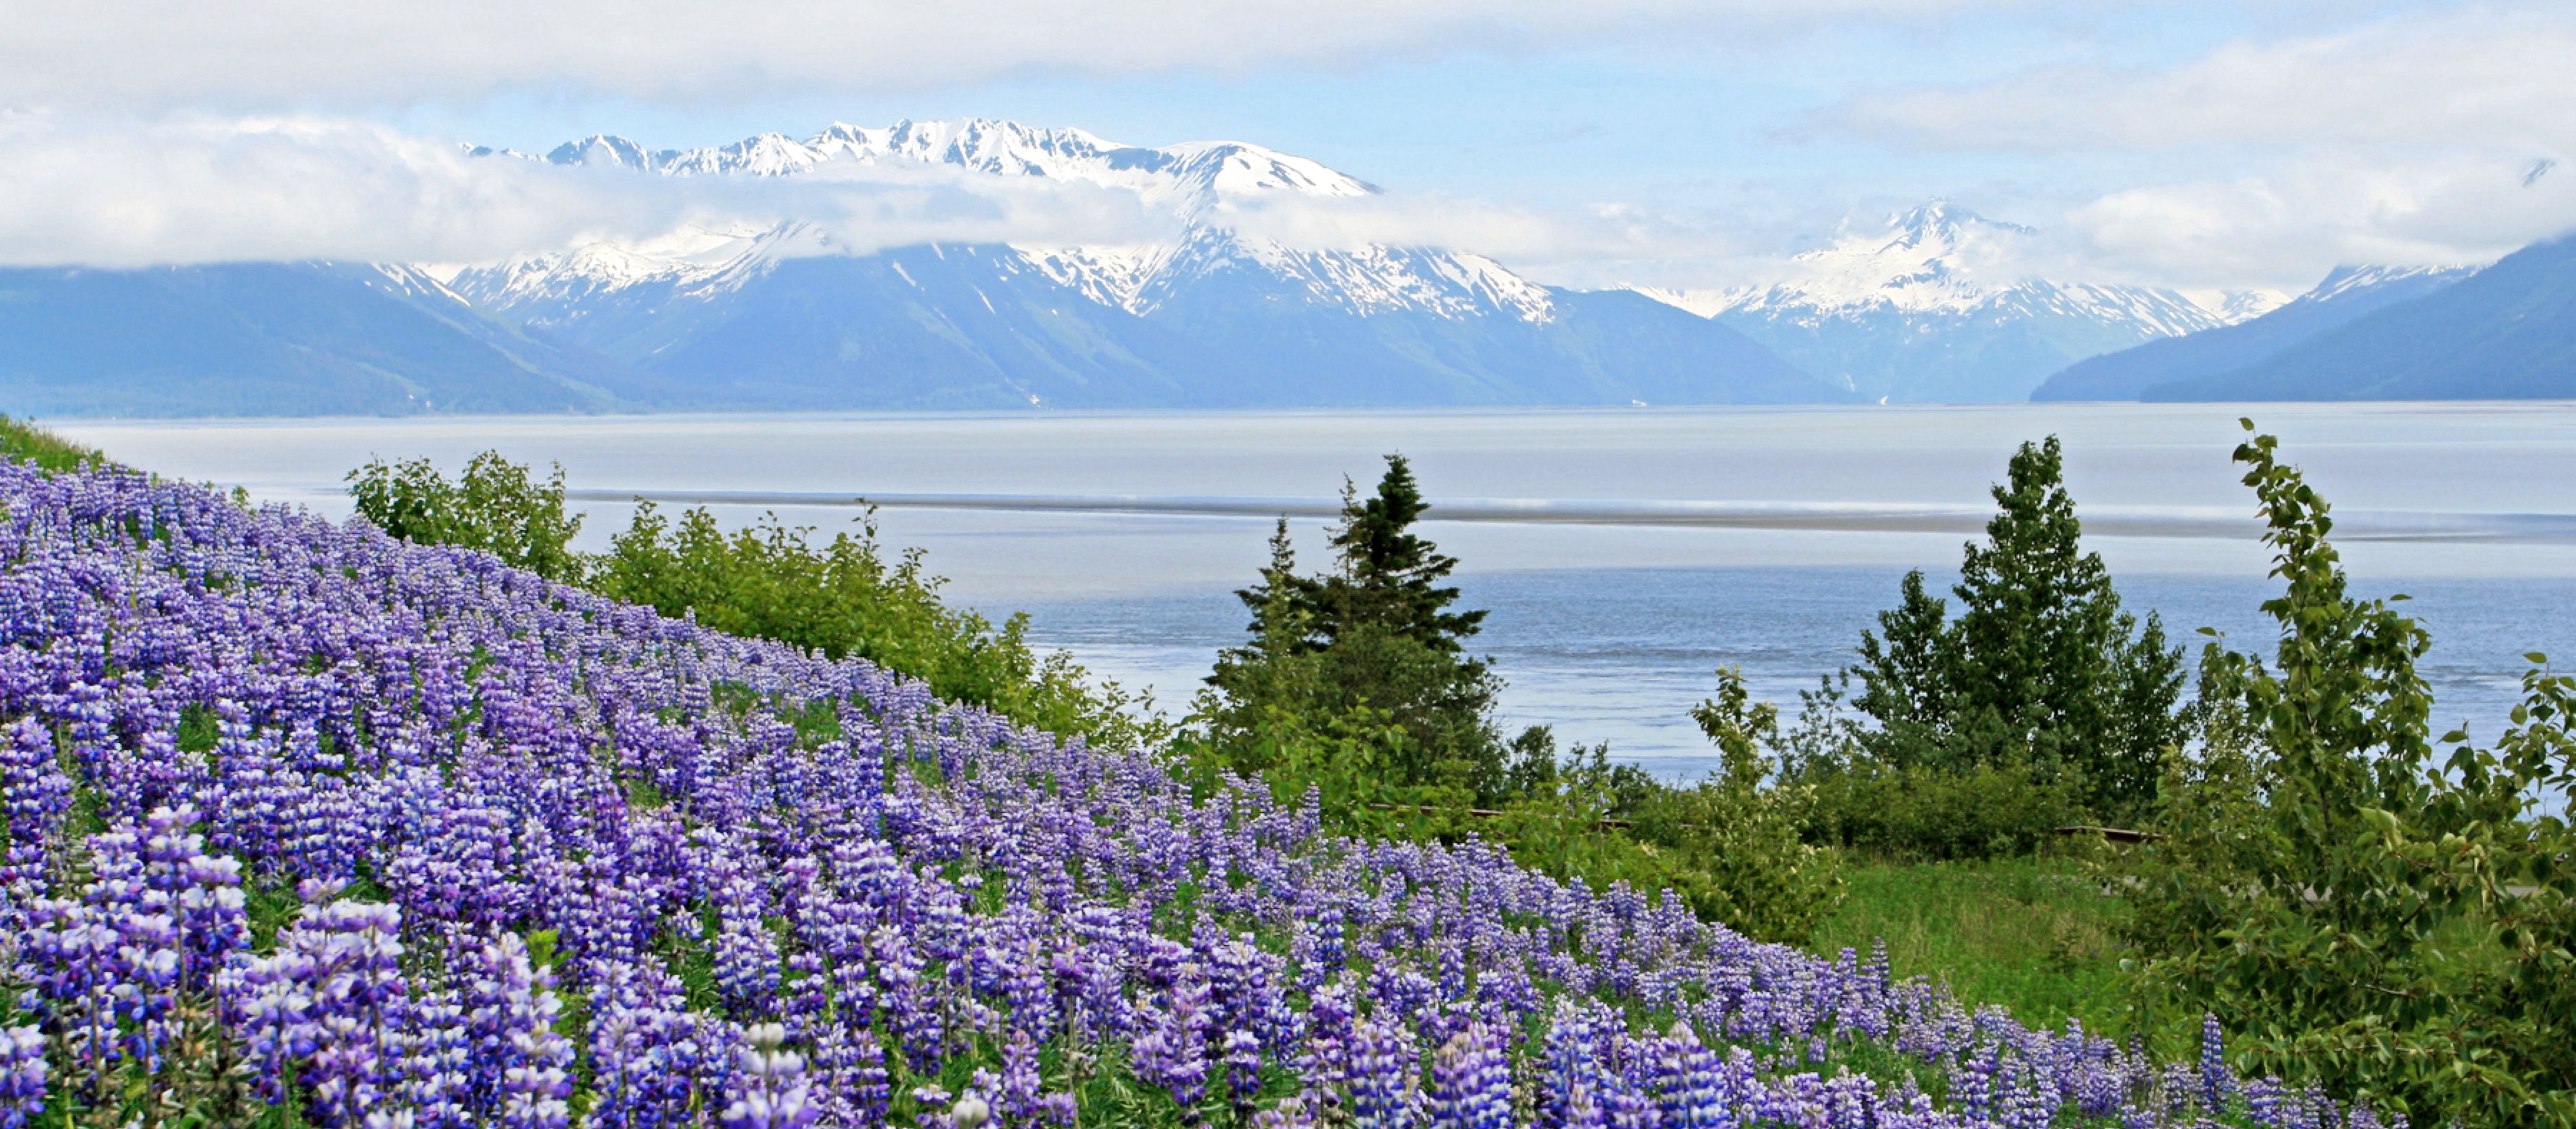 Wildblumen am sommerlichen Golf von Alaska